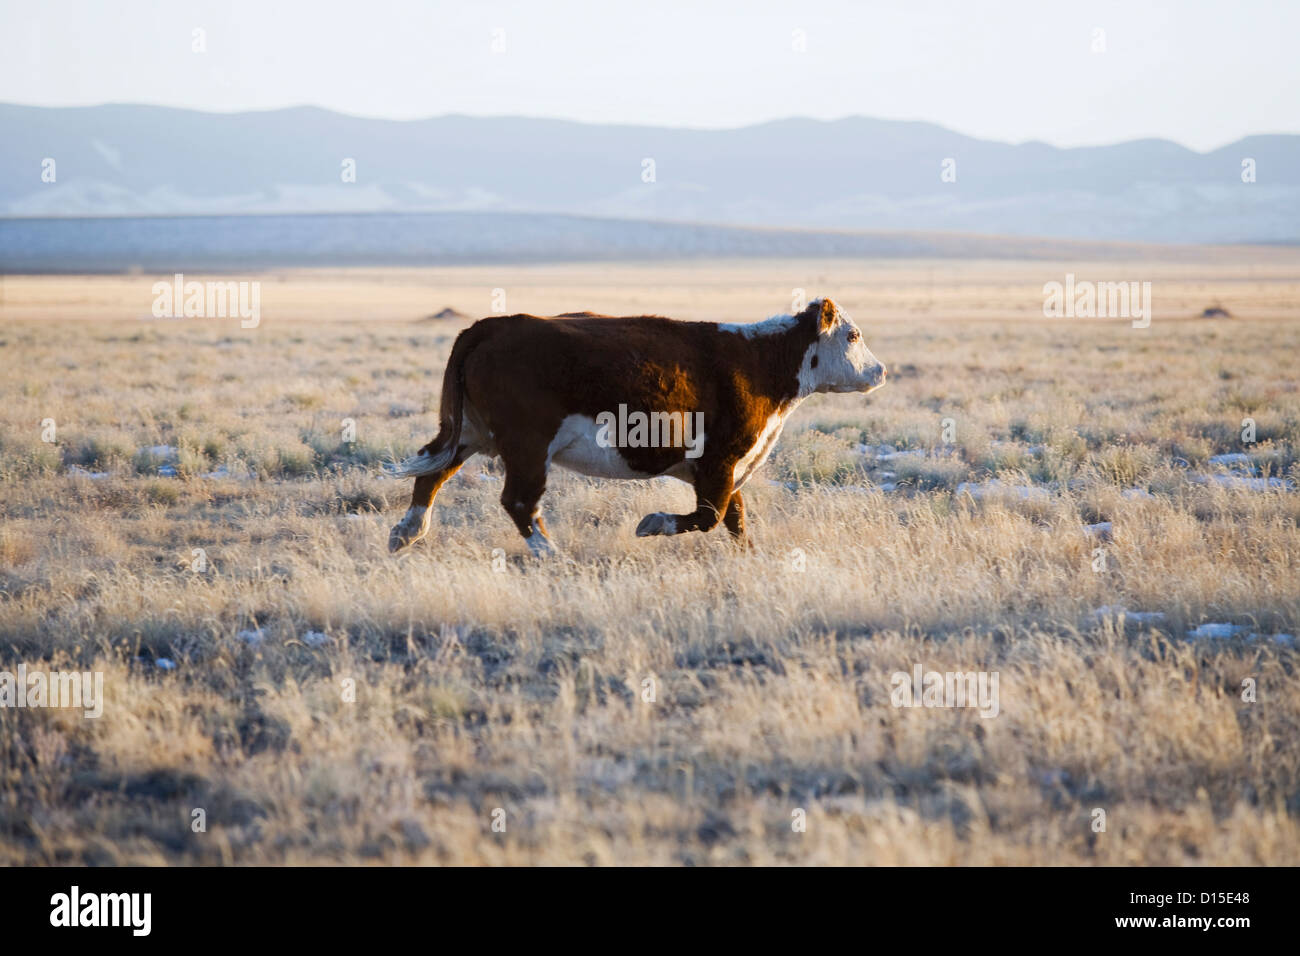 USA, Colorado, Cow running through field Stock Photo